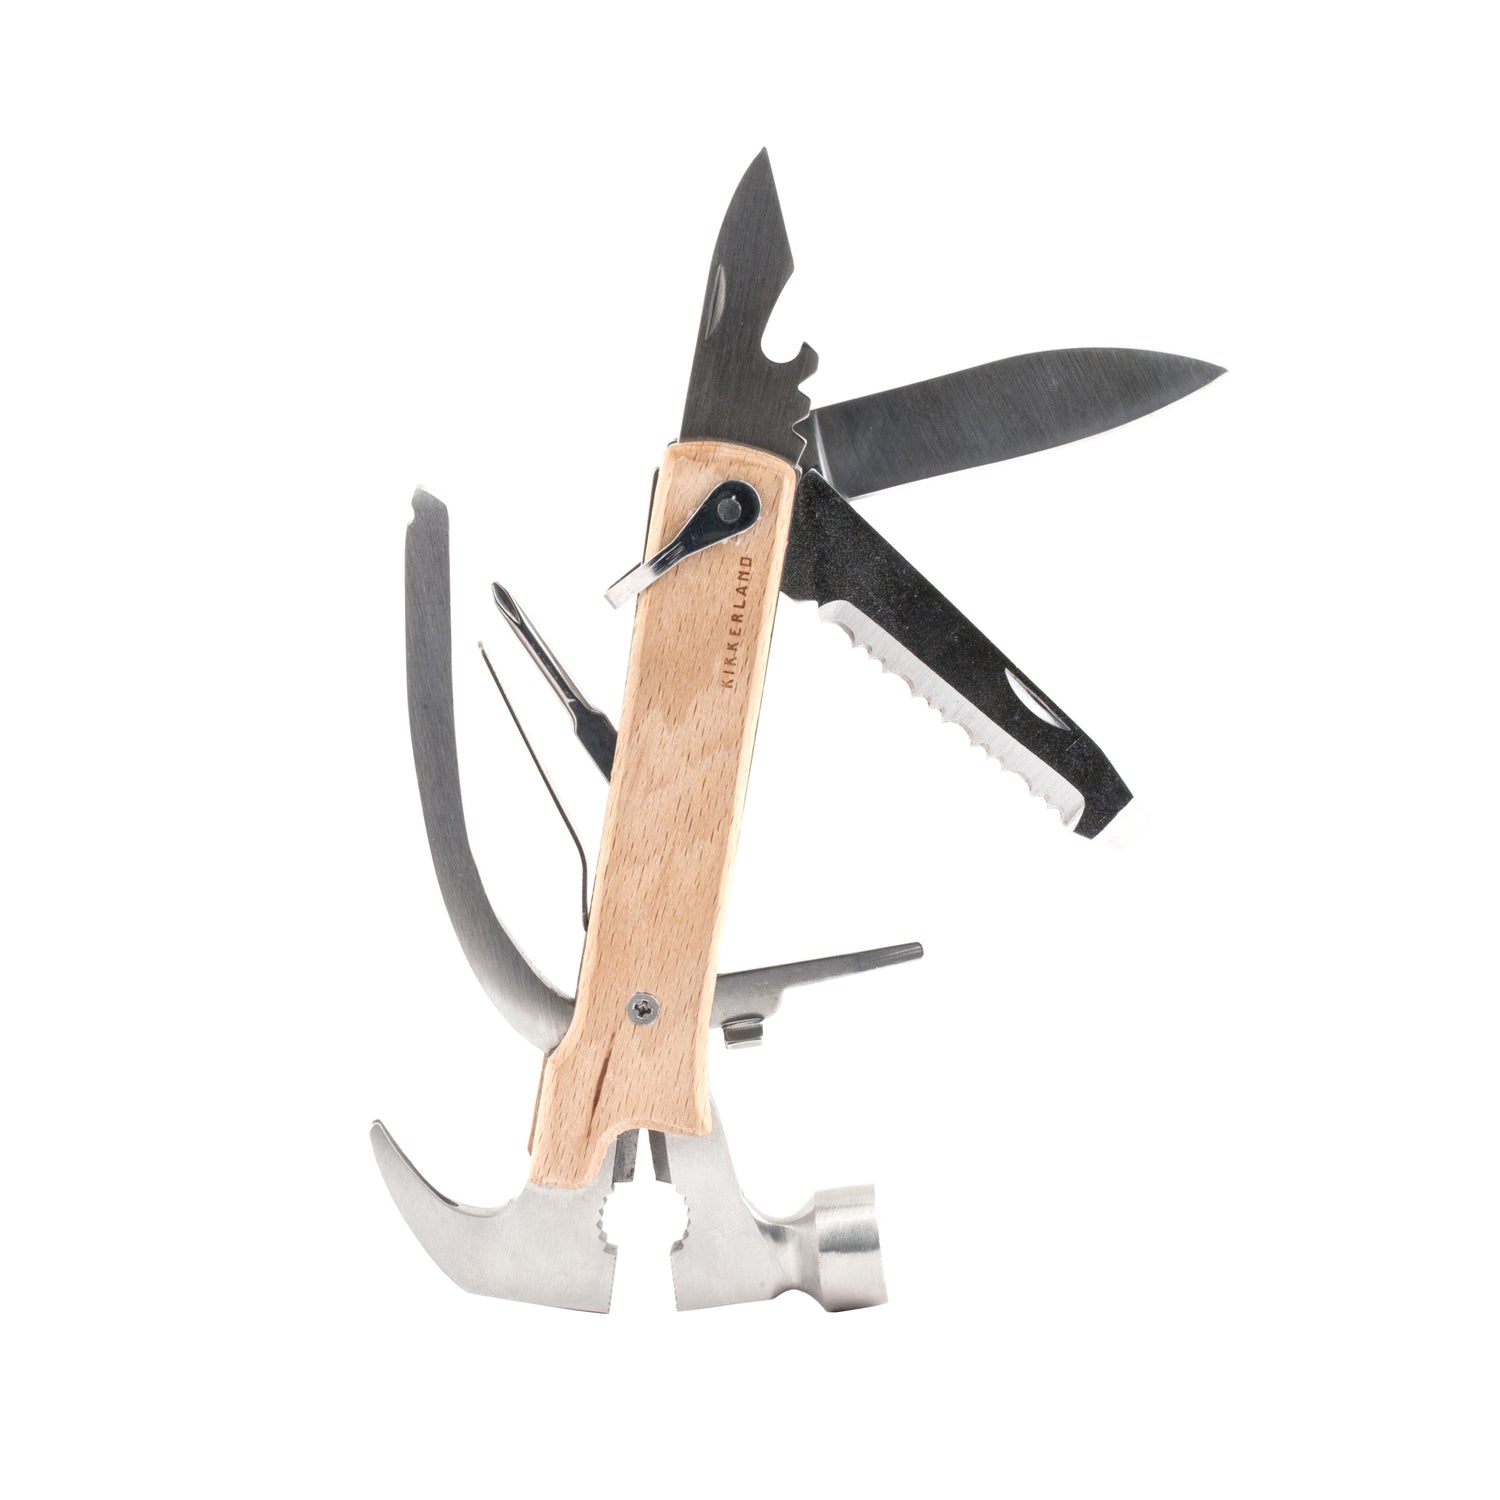 Mens Custom Hammer and Multi Tool – K and N Designs